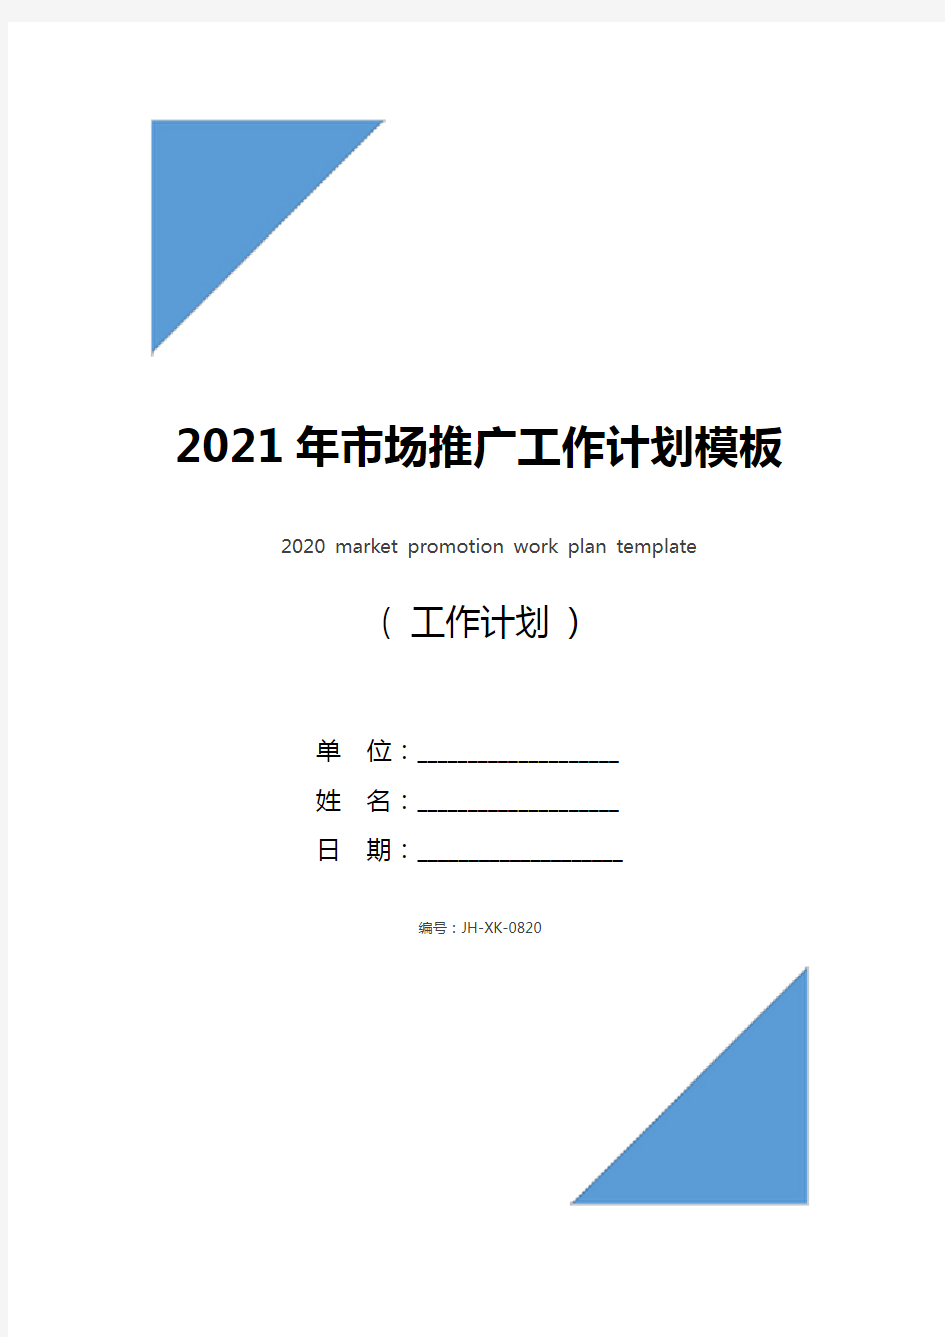 2021年市场推广工作计划模板(通用版)